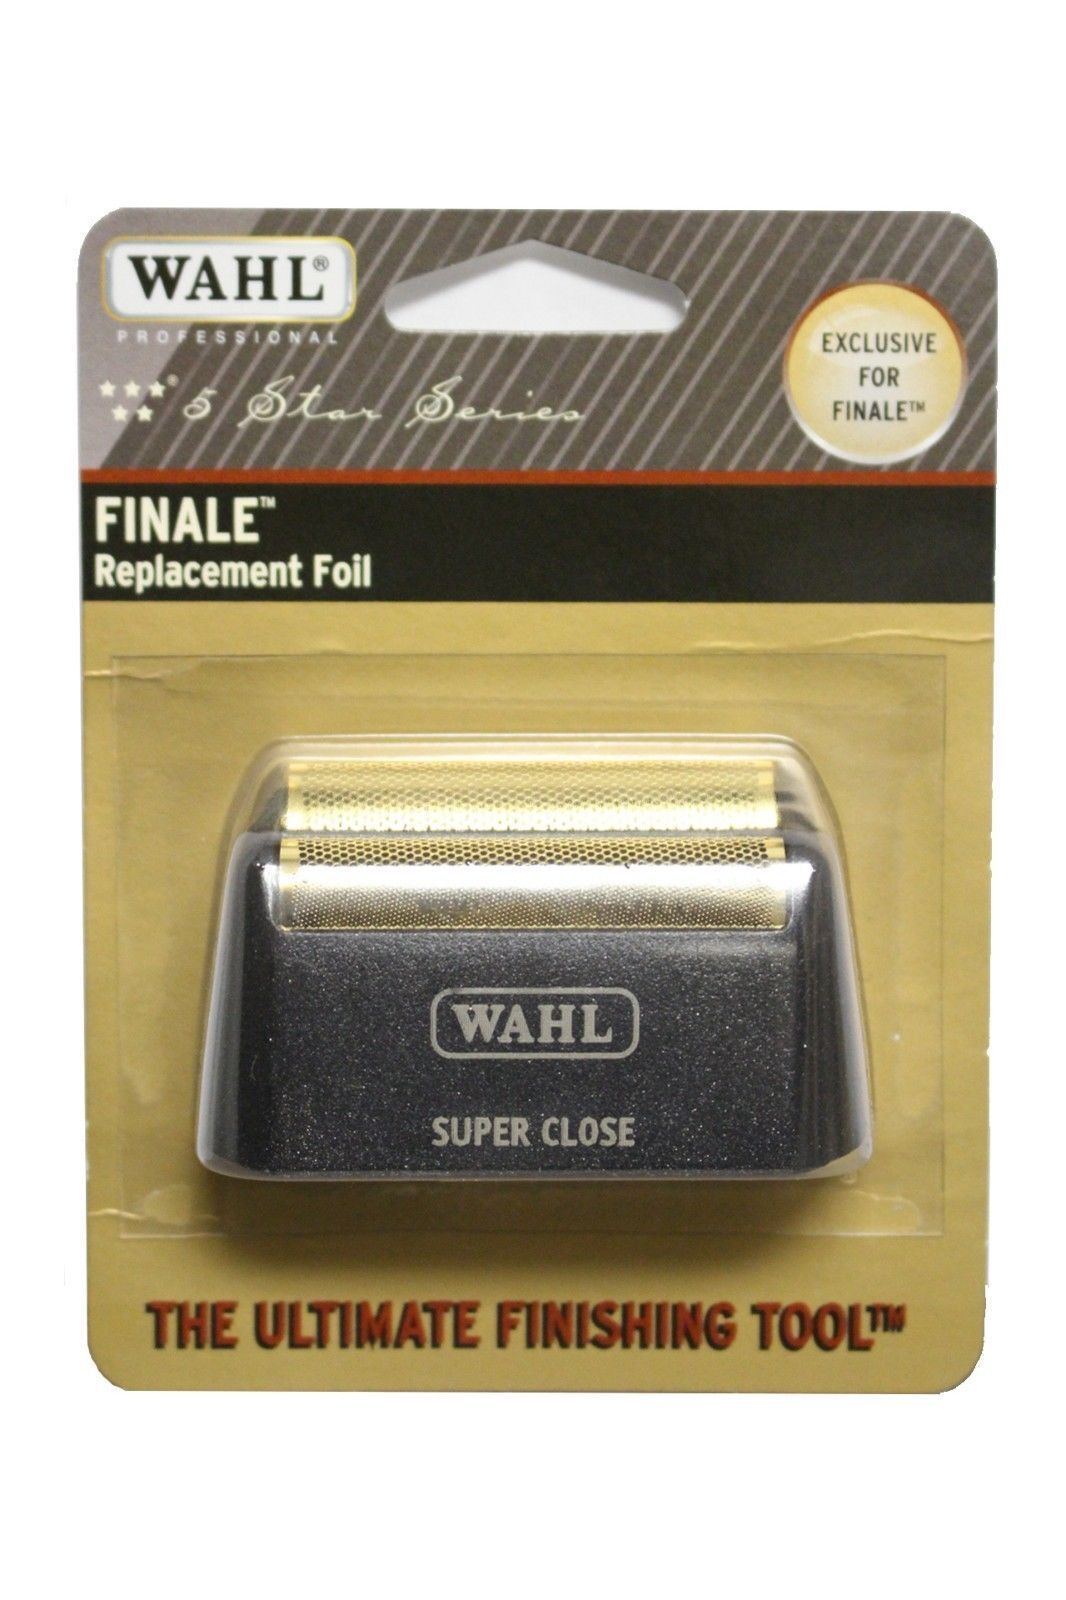 Wahl Finale Shaver Foil (7043-100)